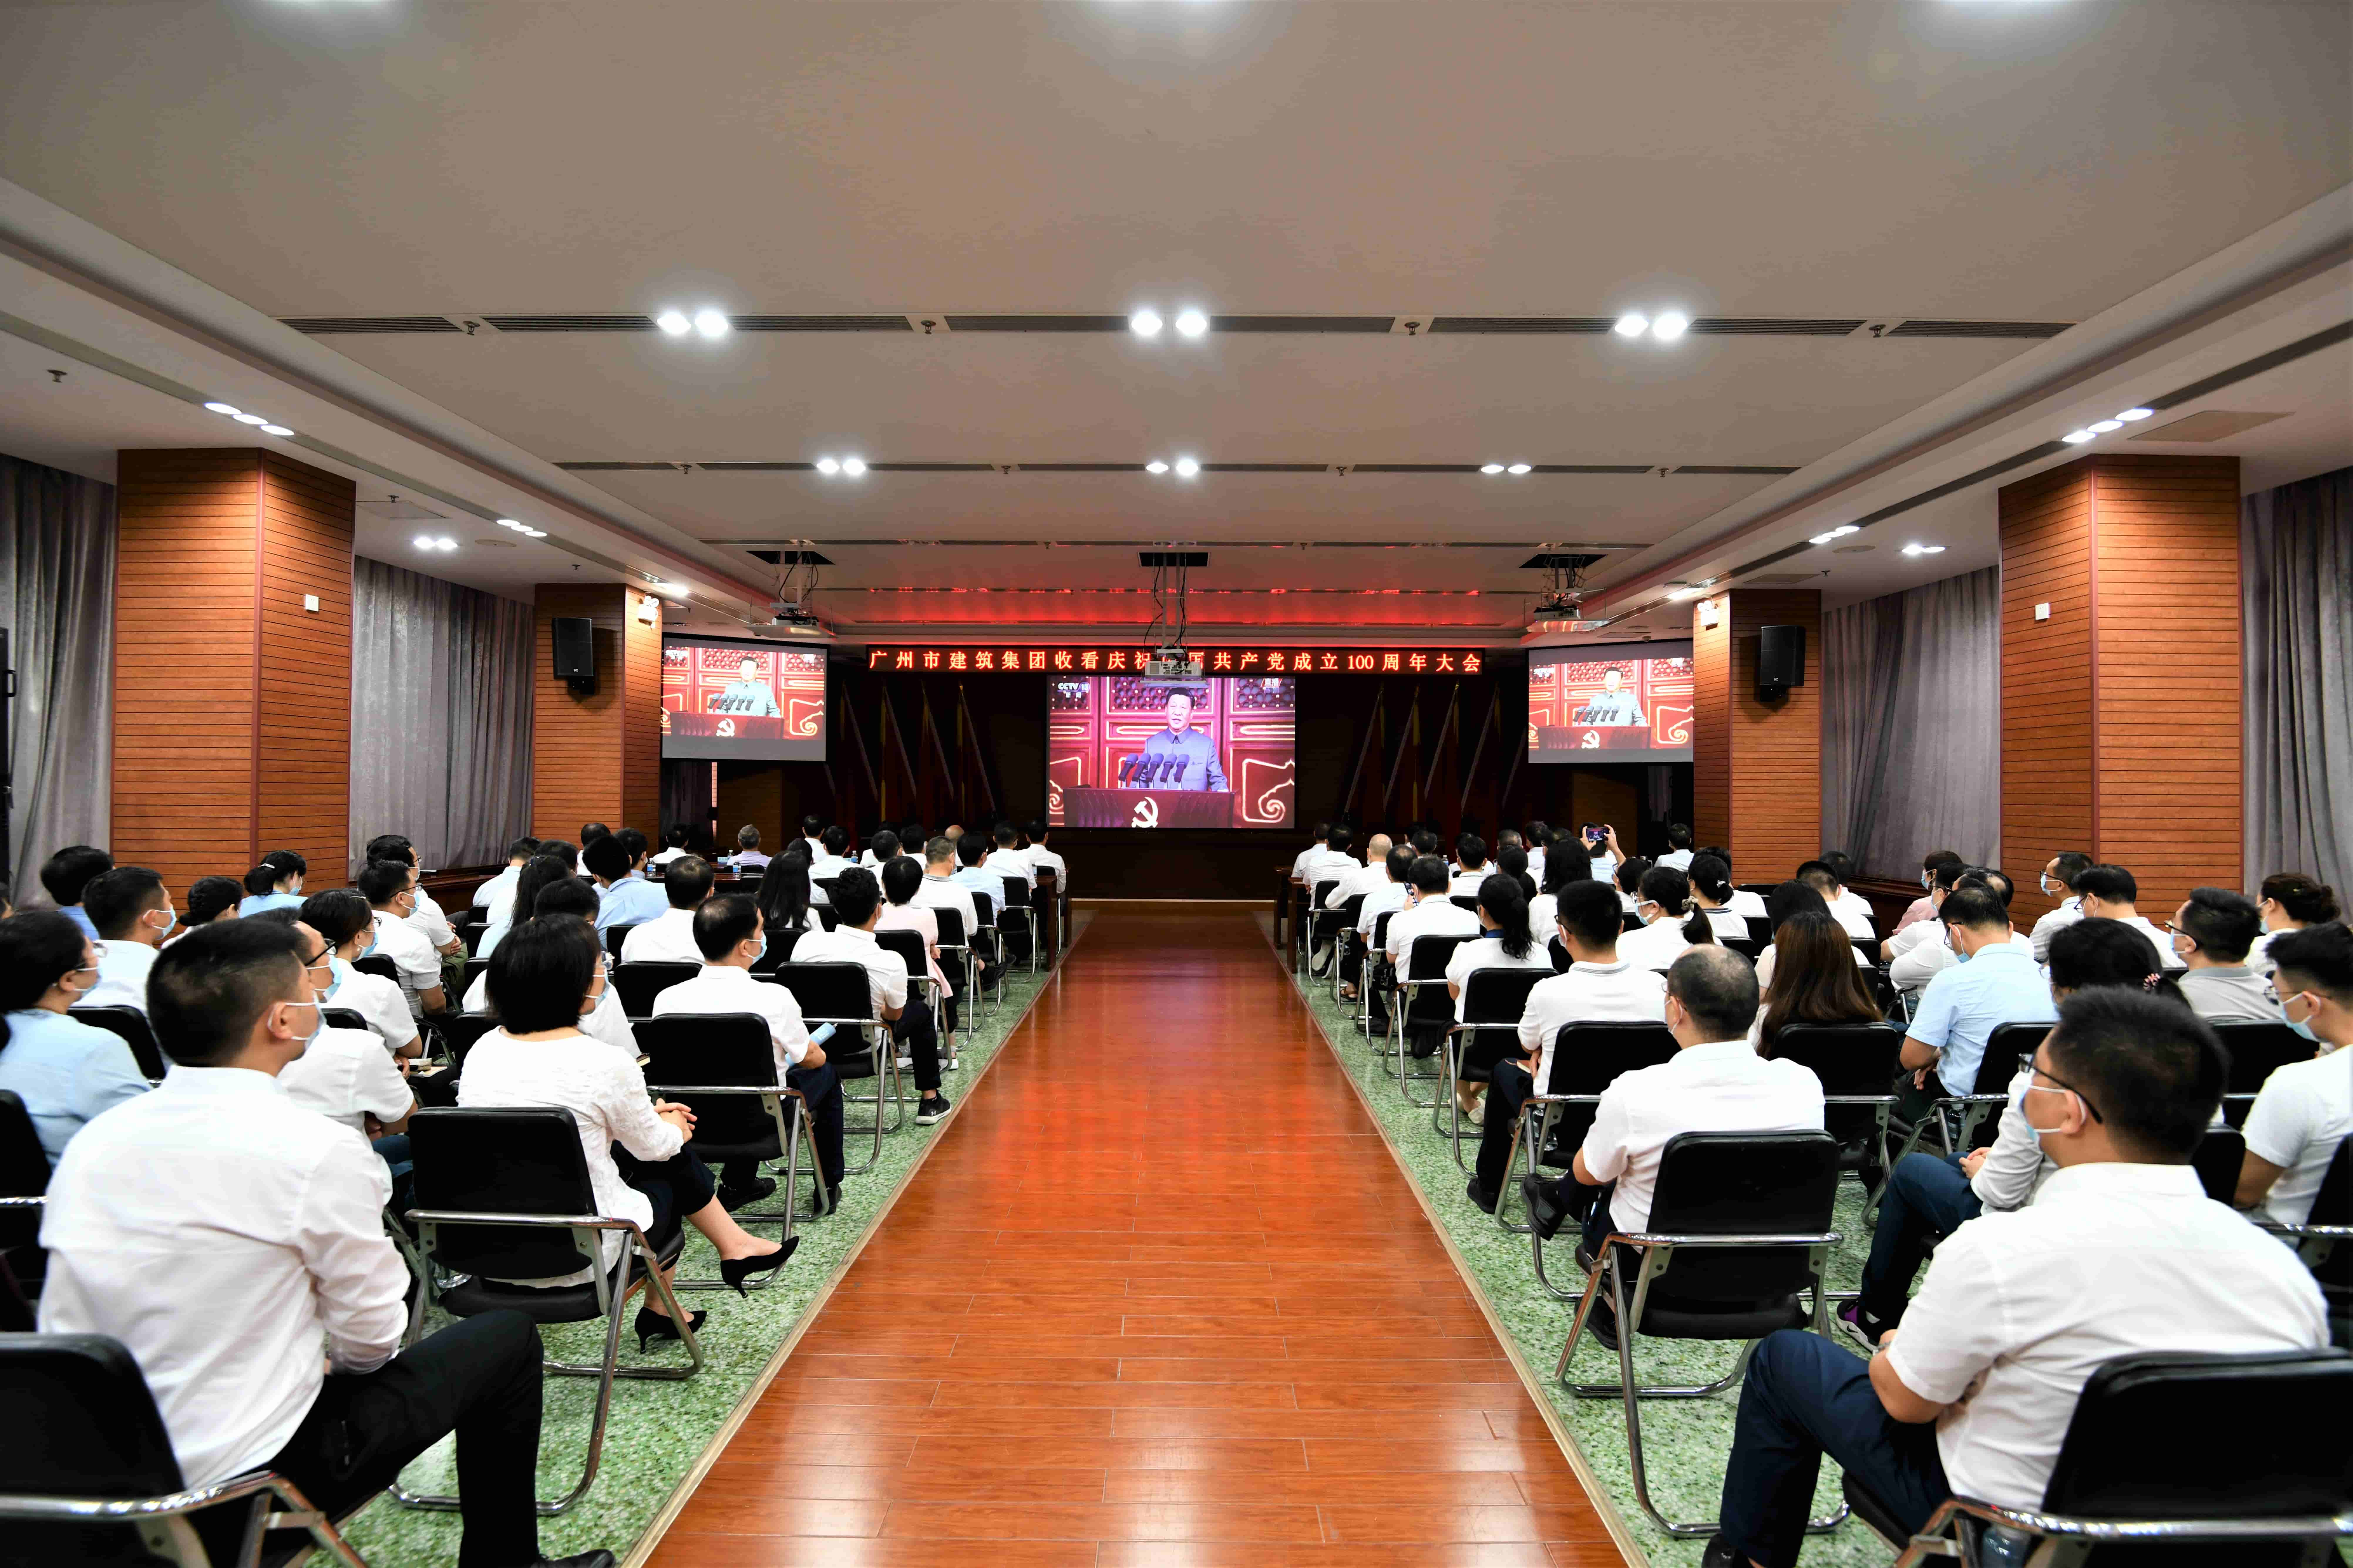 yd2333云顶电子游戏集团组织收看收听庆祝中国共产党成立100周年大会现场直播